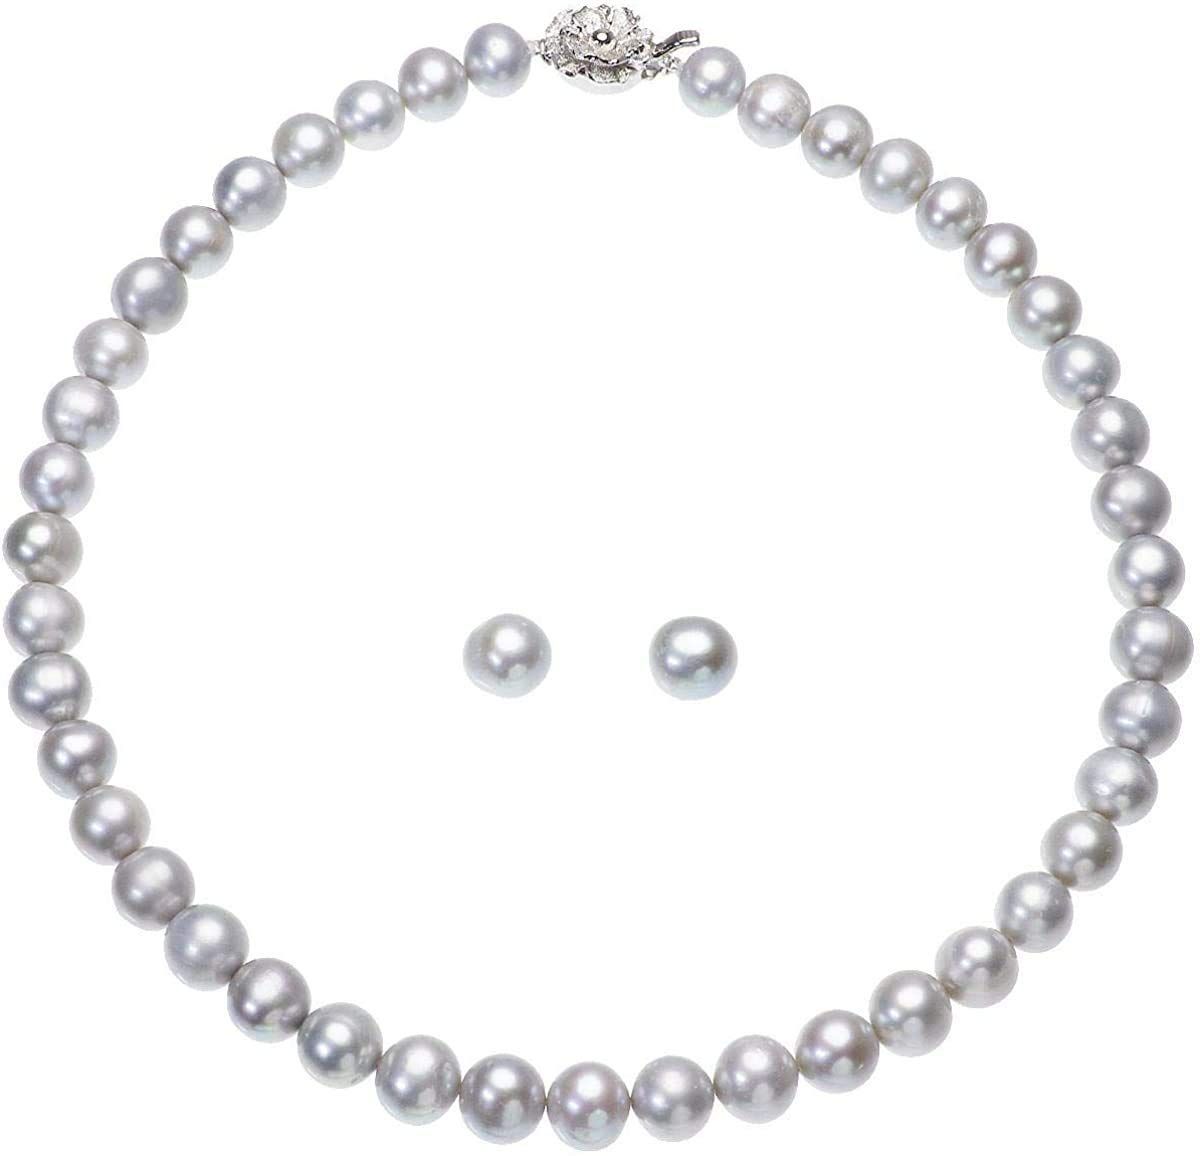 【新着商品】パール ネックレス 冠婚葬祭 セット 本真珠 高級 淡水真珠 大粒